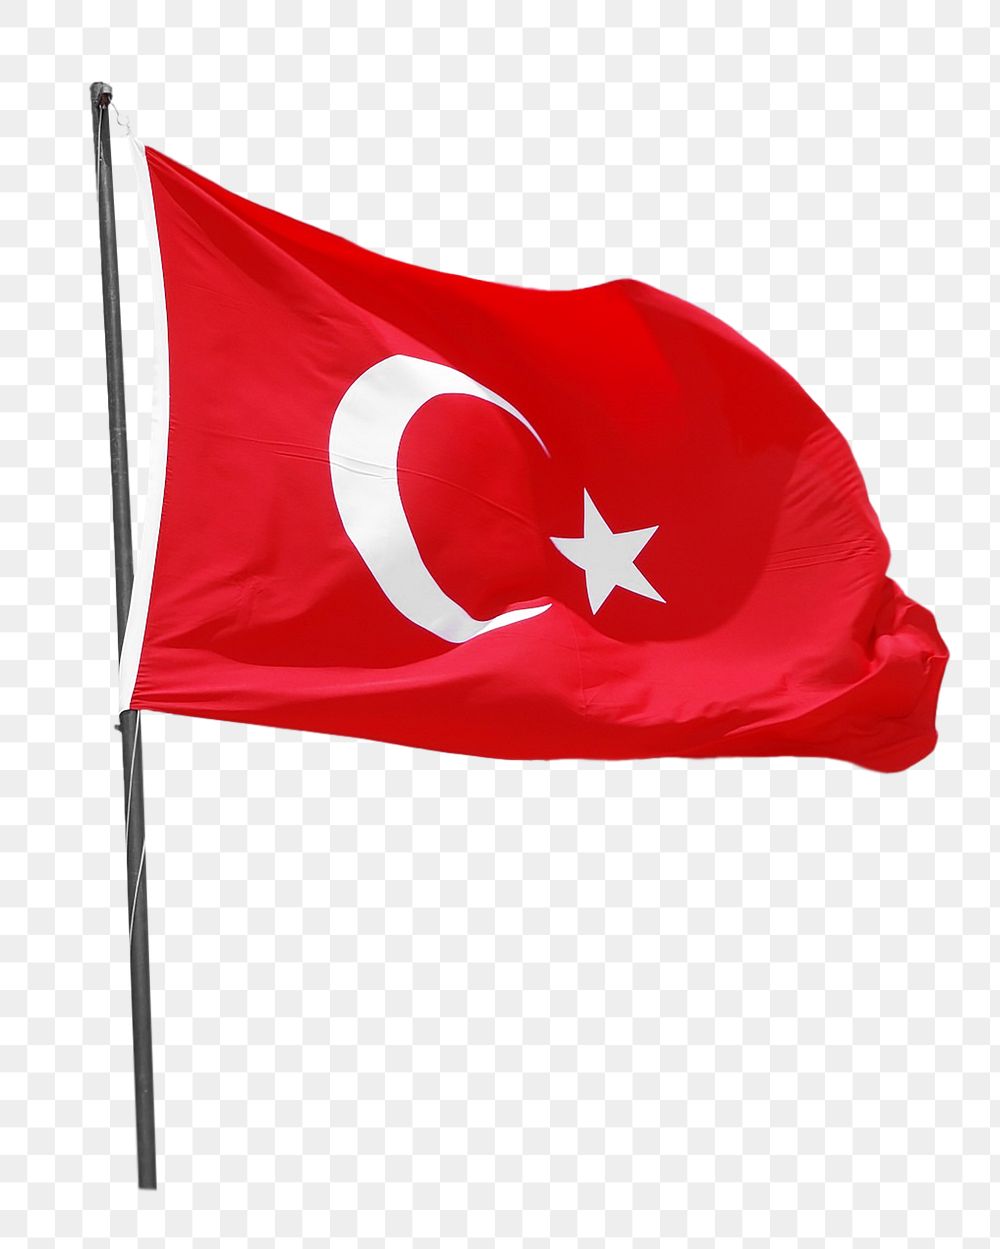 Turkish flag png sticker, transparent background